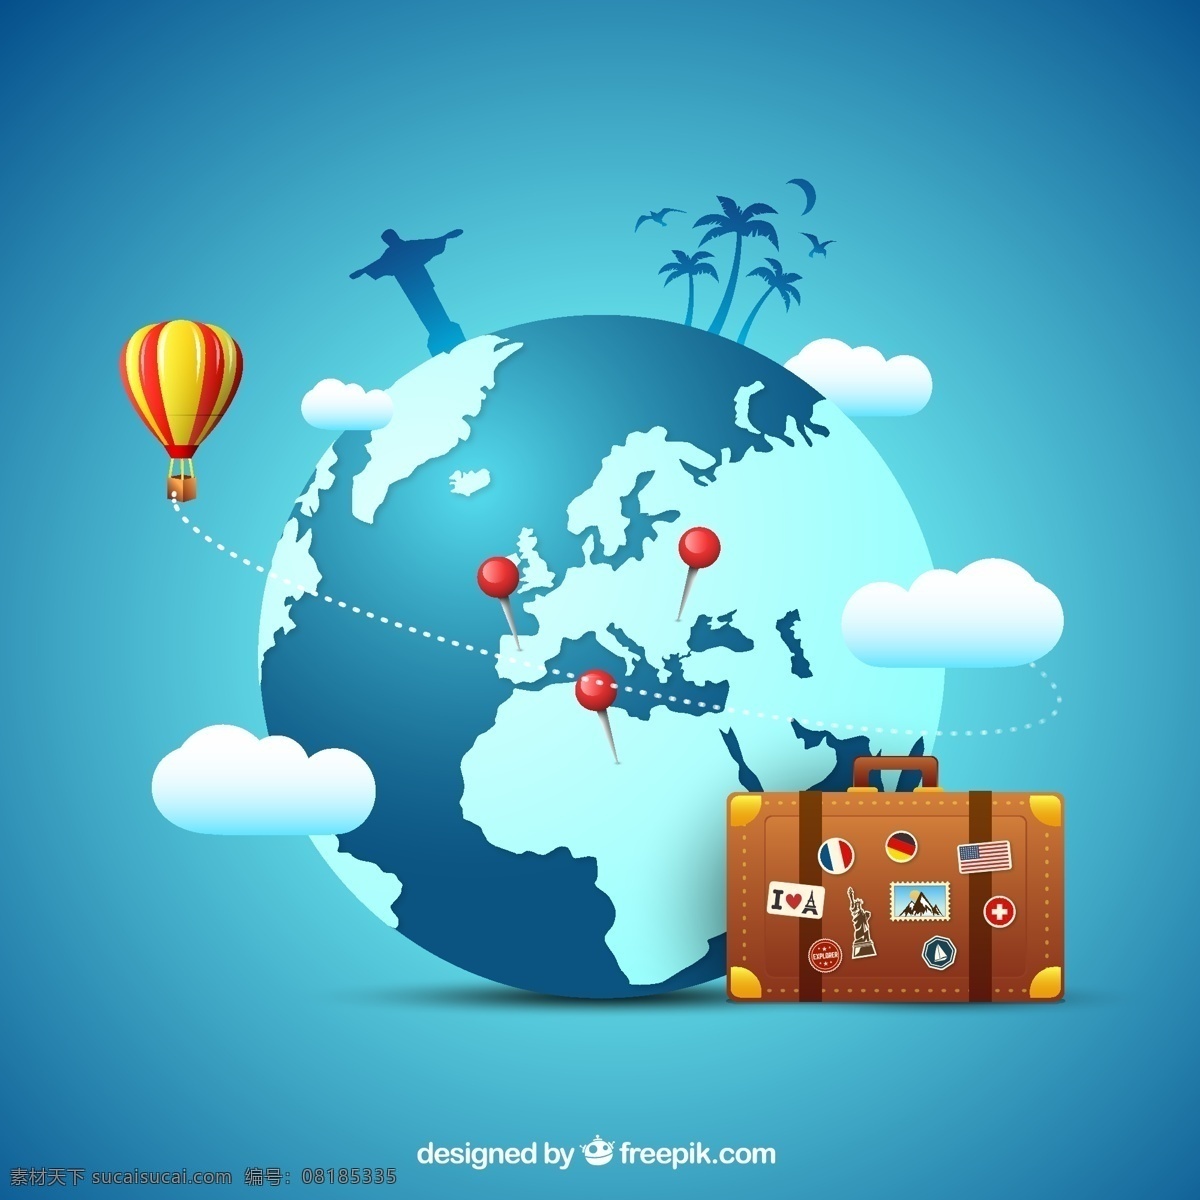 环球旅游插画 巴西基督像 热气球 云朵 地球 环球 椰子树 旅行 行李箱 矢量图 ai格式 卡通设计